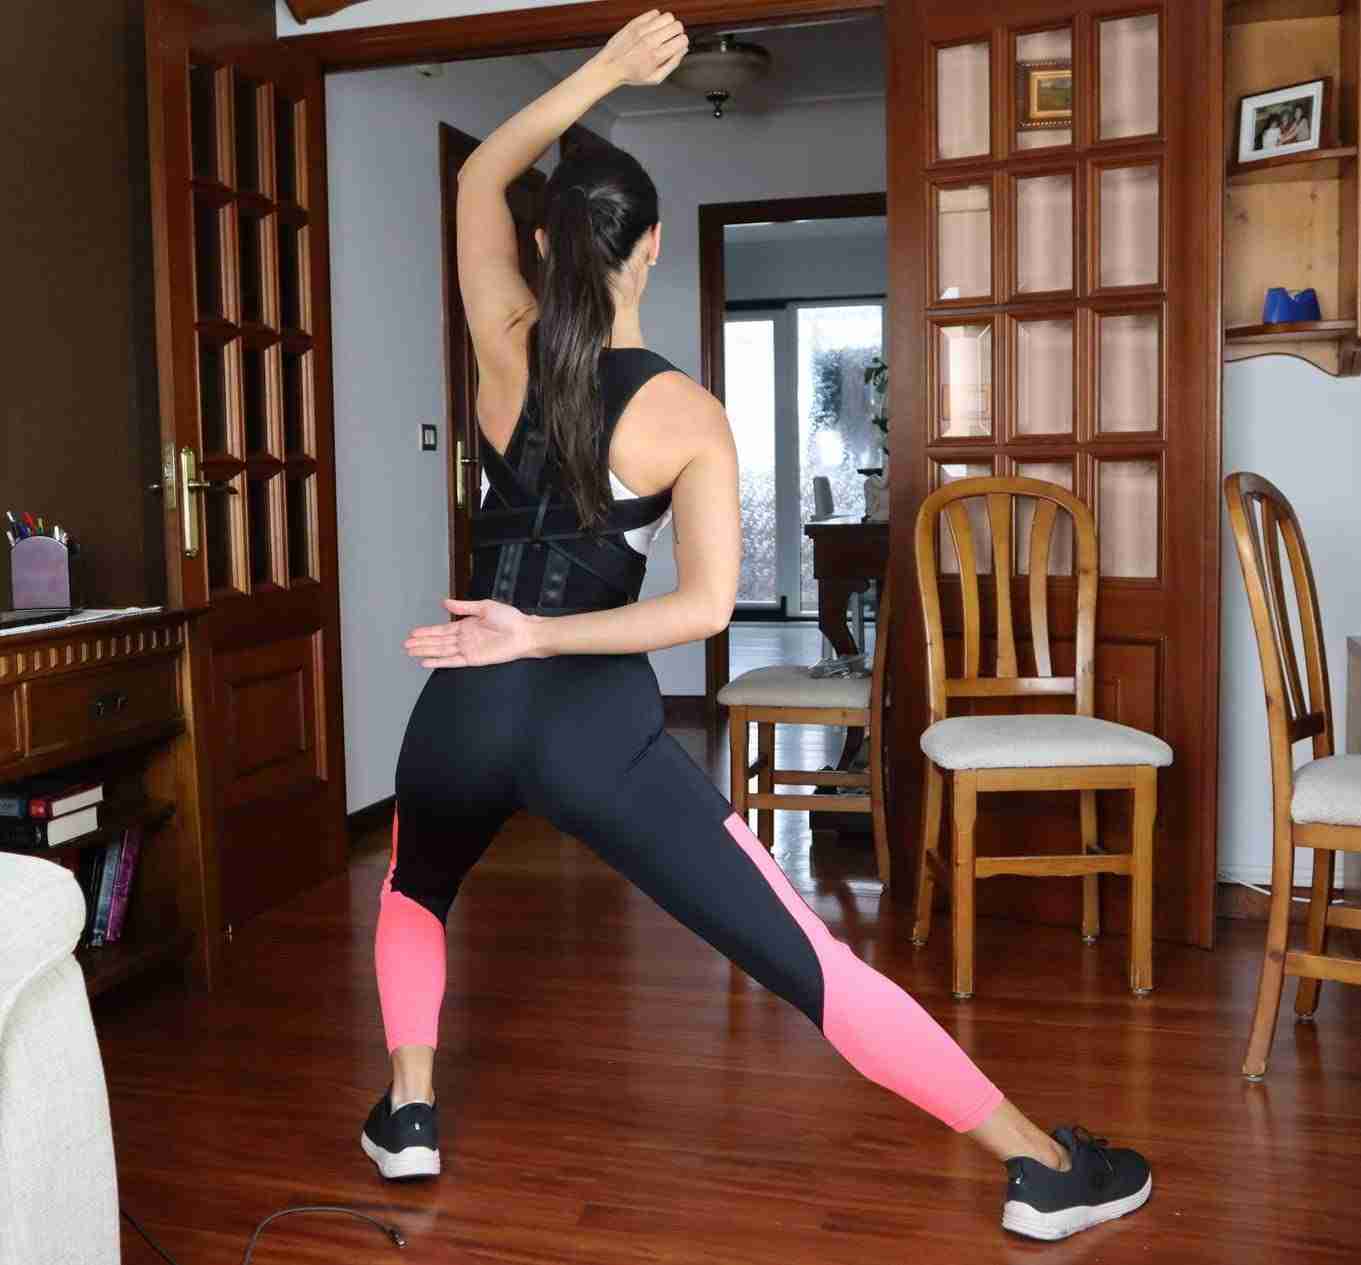 Mejores correctores de espalda: cómo reducir el dolor lumbar y dorsal con una postura adecuada 10